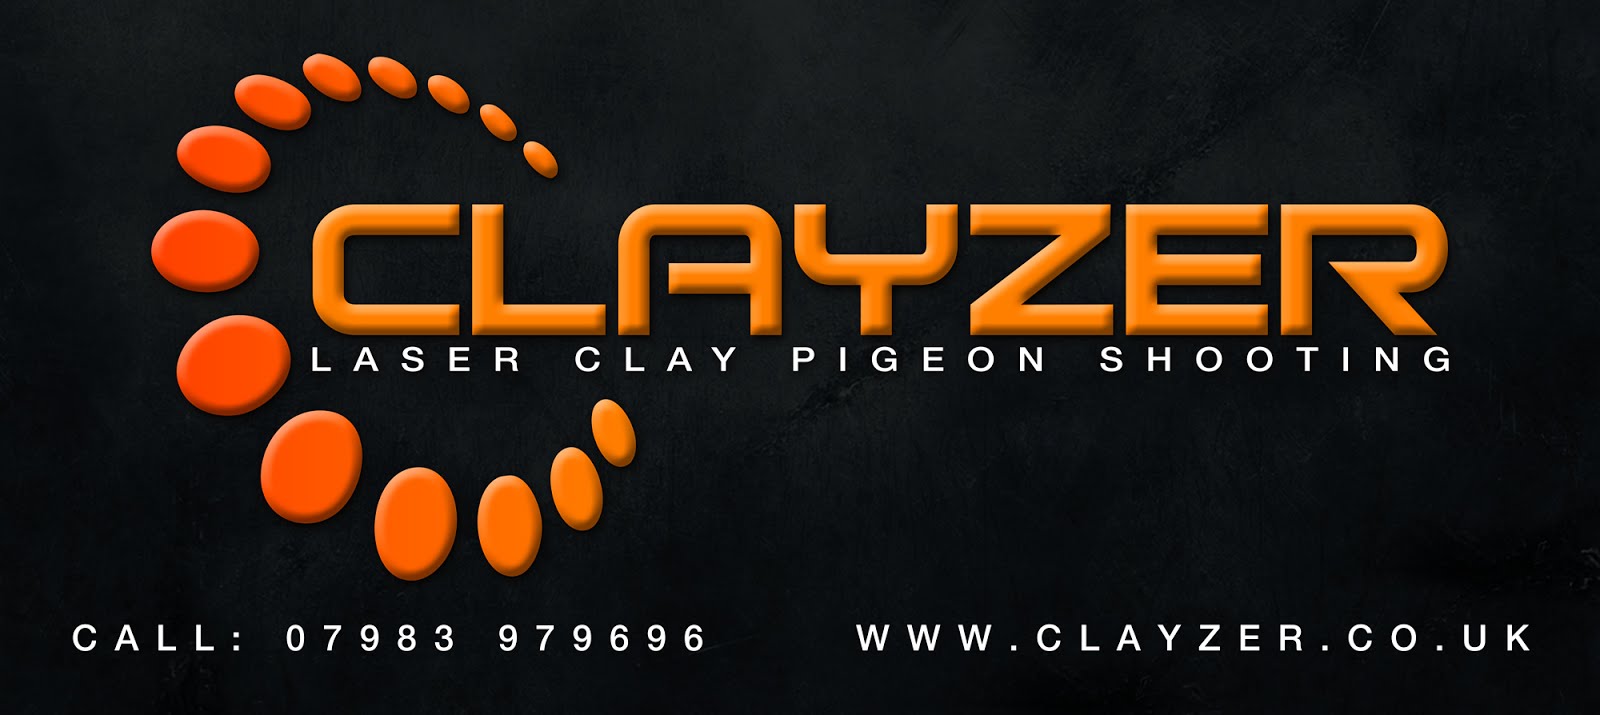 Clayzer